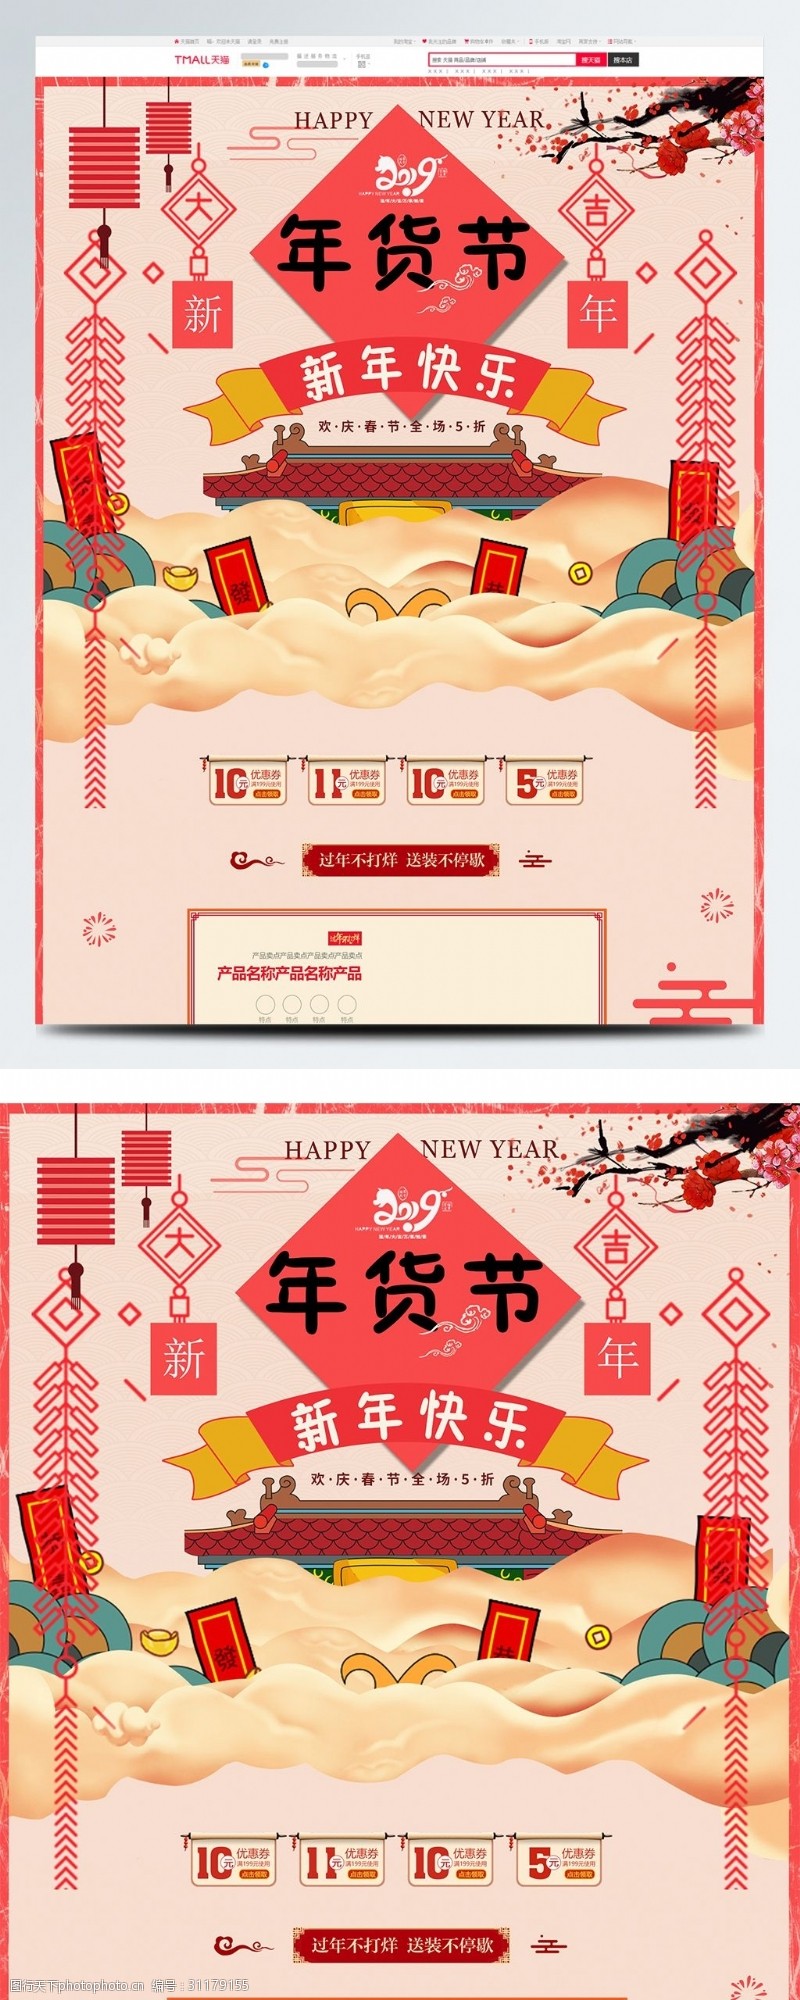 全场商品5折红色喜庆电商促销年货节淘宝首页促销模板